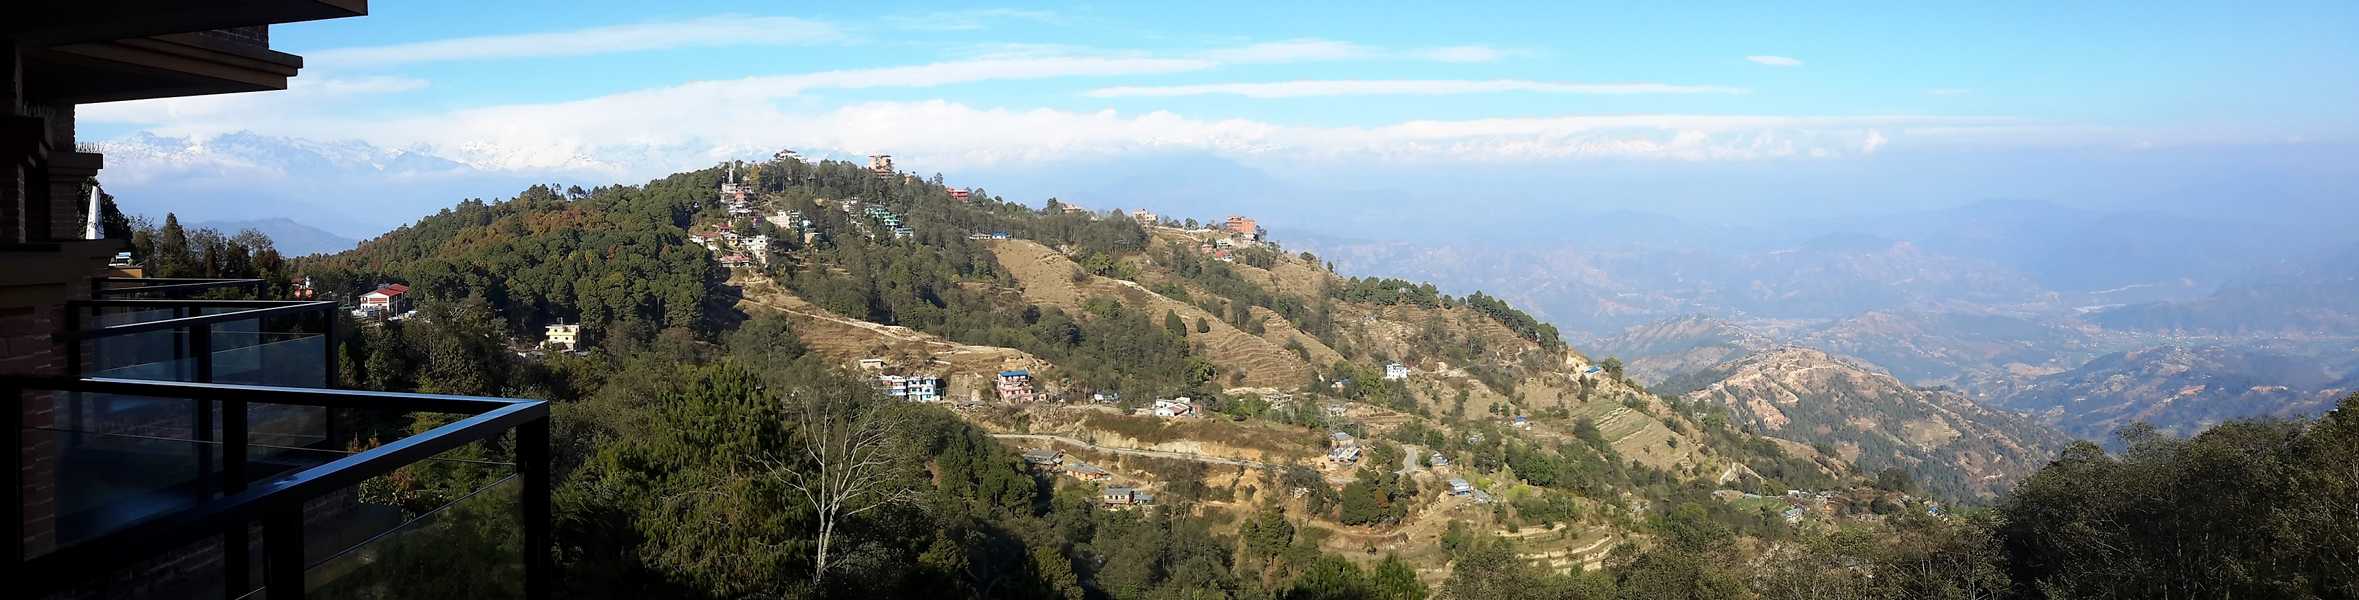 Blick vom Hotelzimmer auf die Bergkette des Langtang Himal